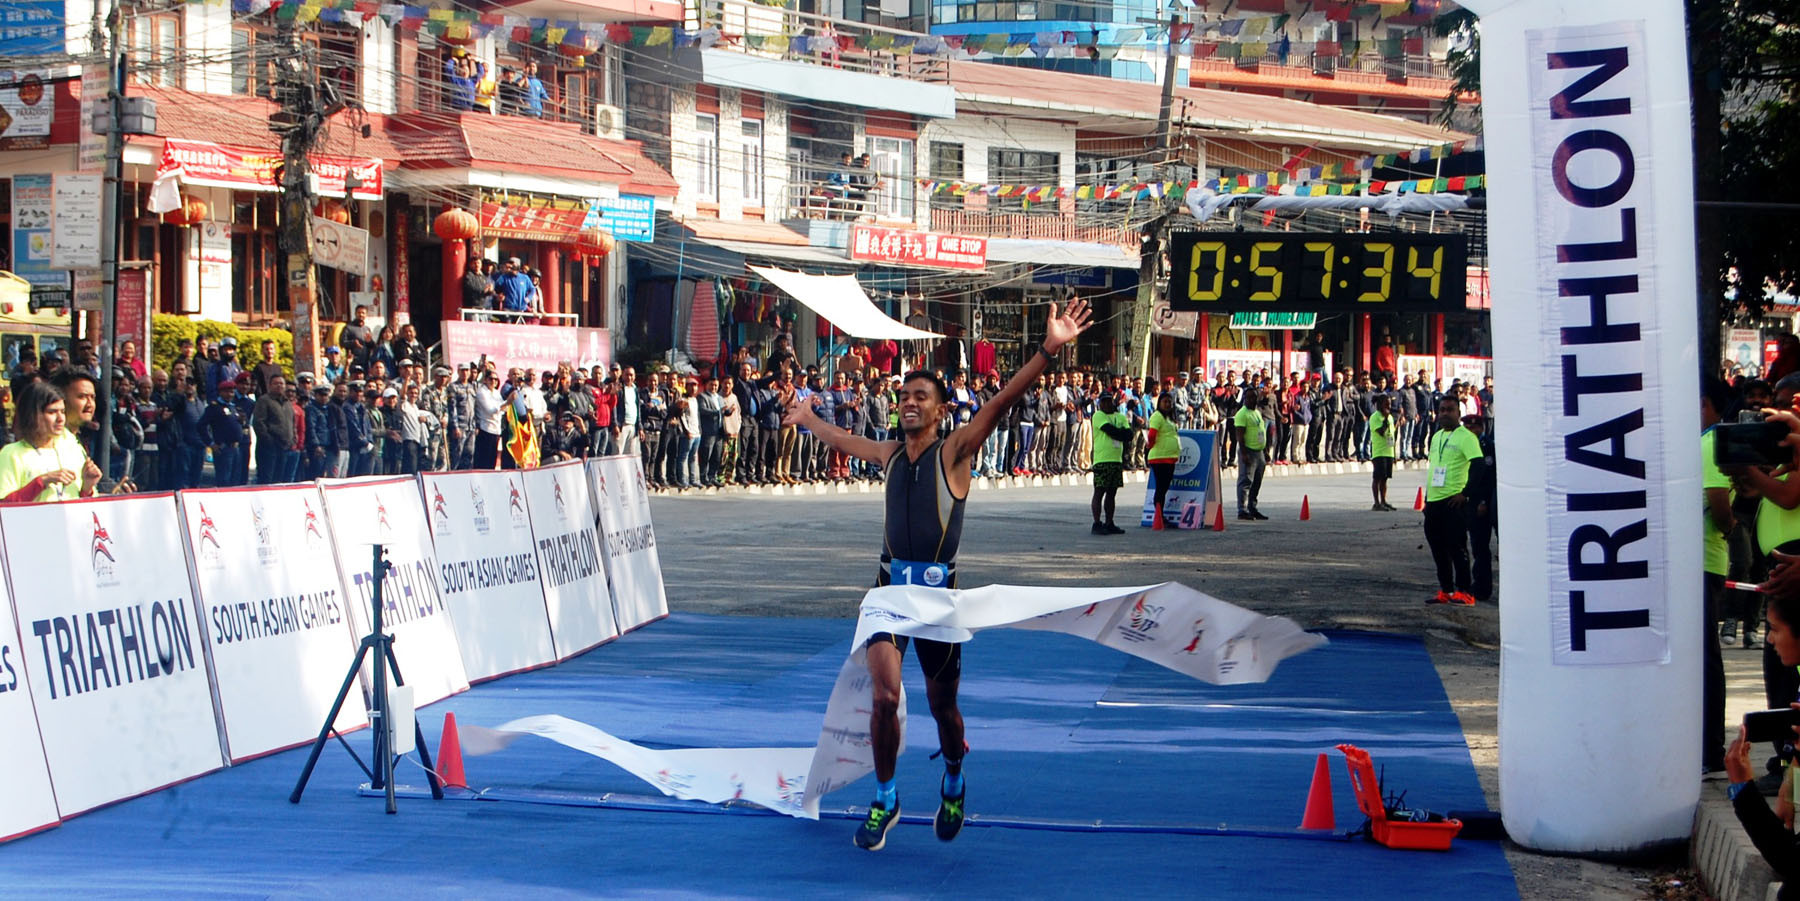 १३औँ साग : डुवाथोलनमा नेपाललाई १ स्वर्ण र २ रजत पदक